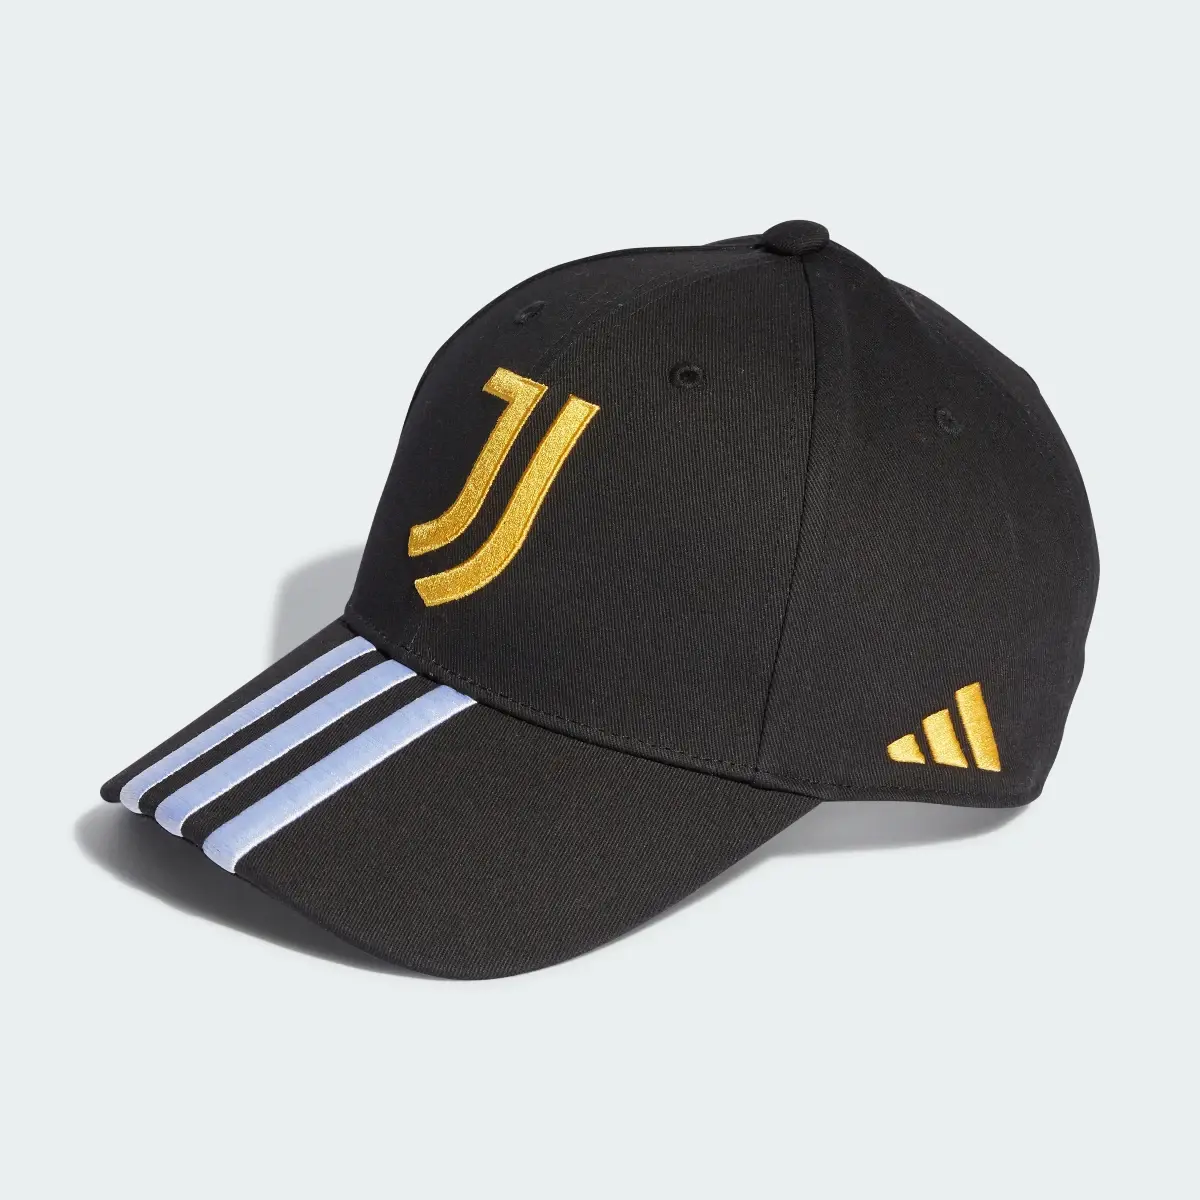 Adidas Juventus Baseball Cap. 2